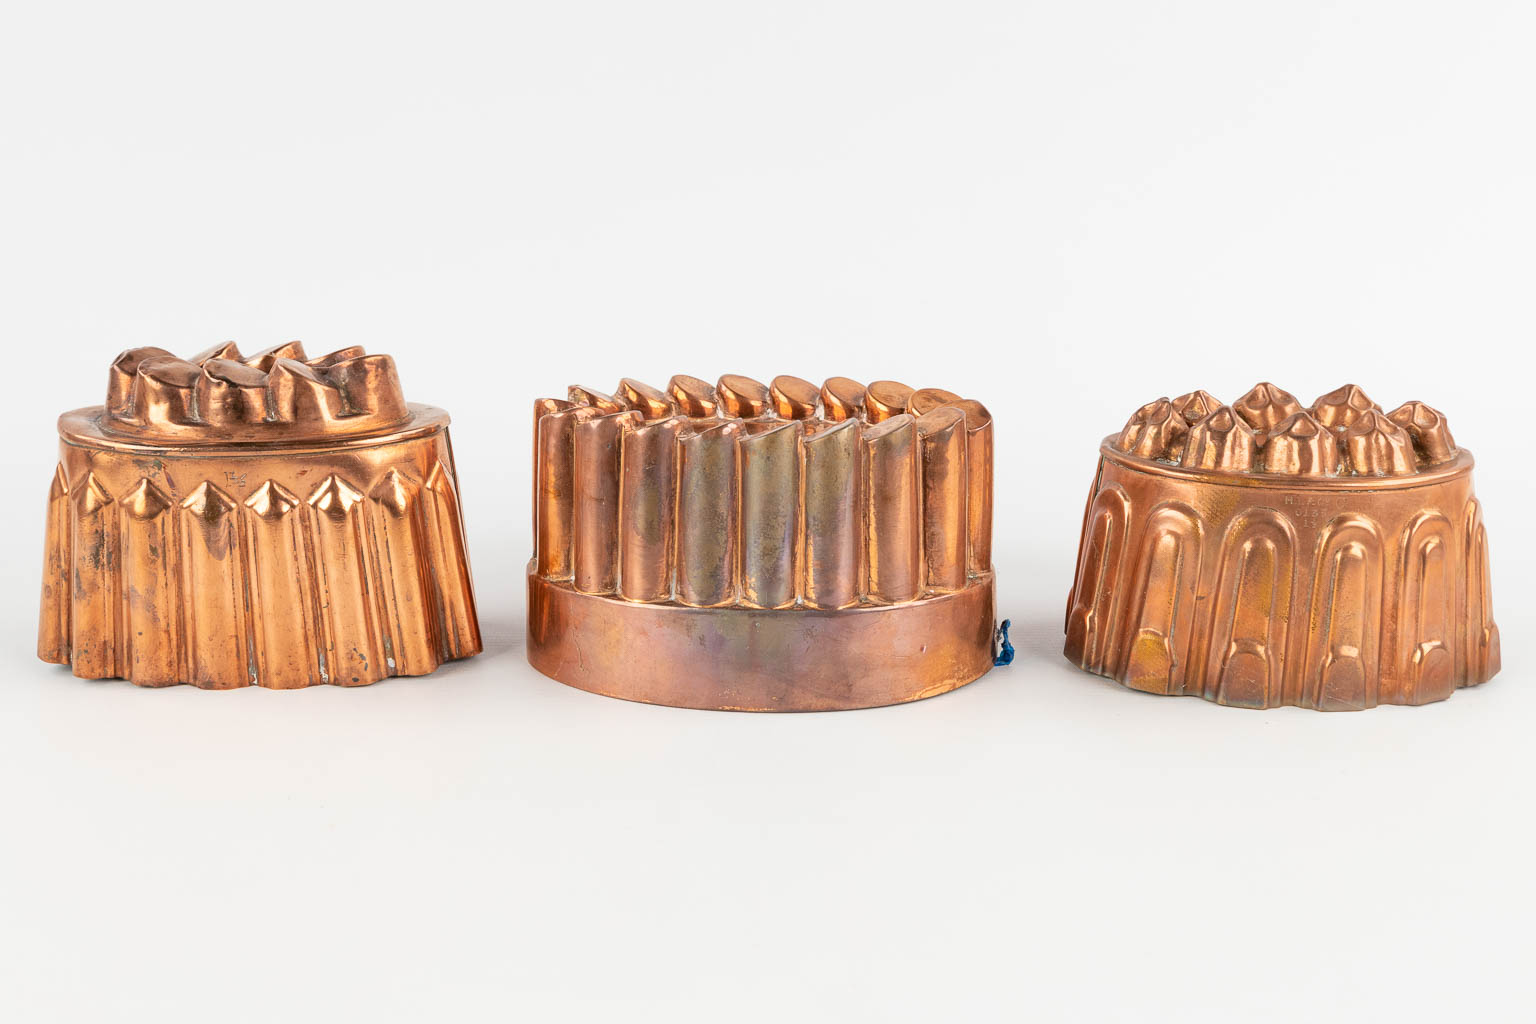 14 bakvormen, bijgevoegd een suikerstrooier, koper. 19de/20ste eeuw. (H:9 x D:22 cm)